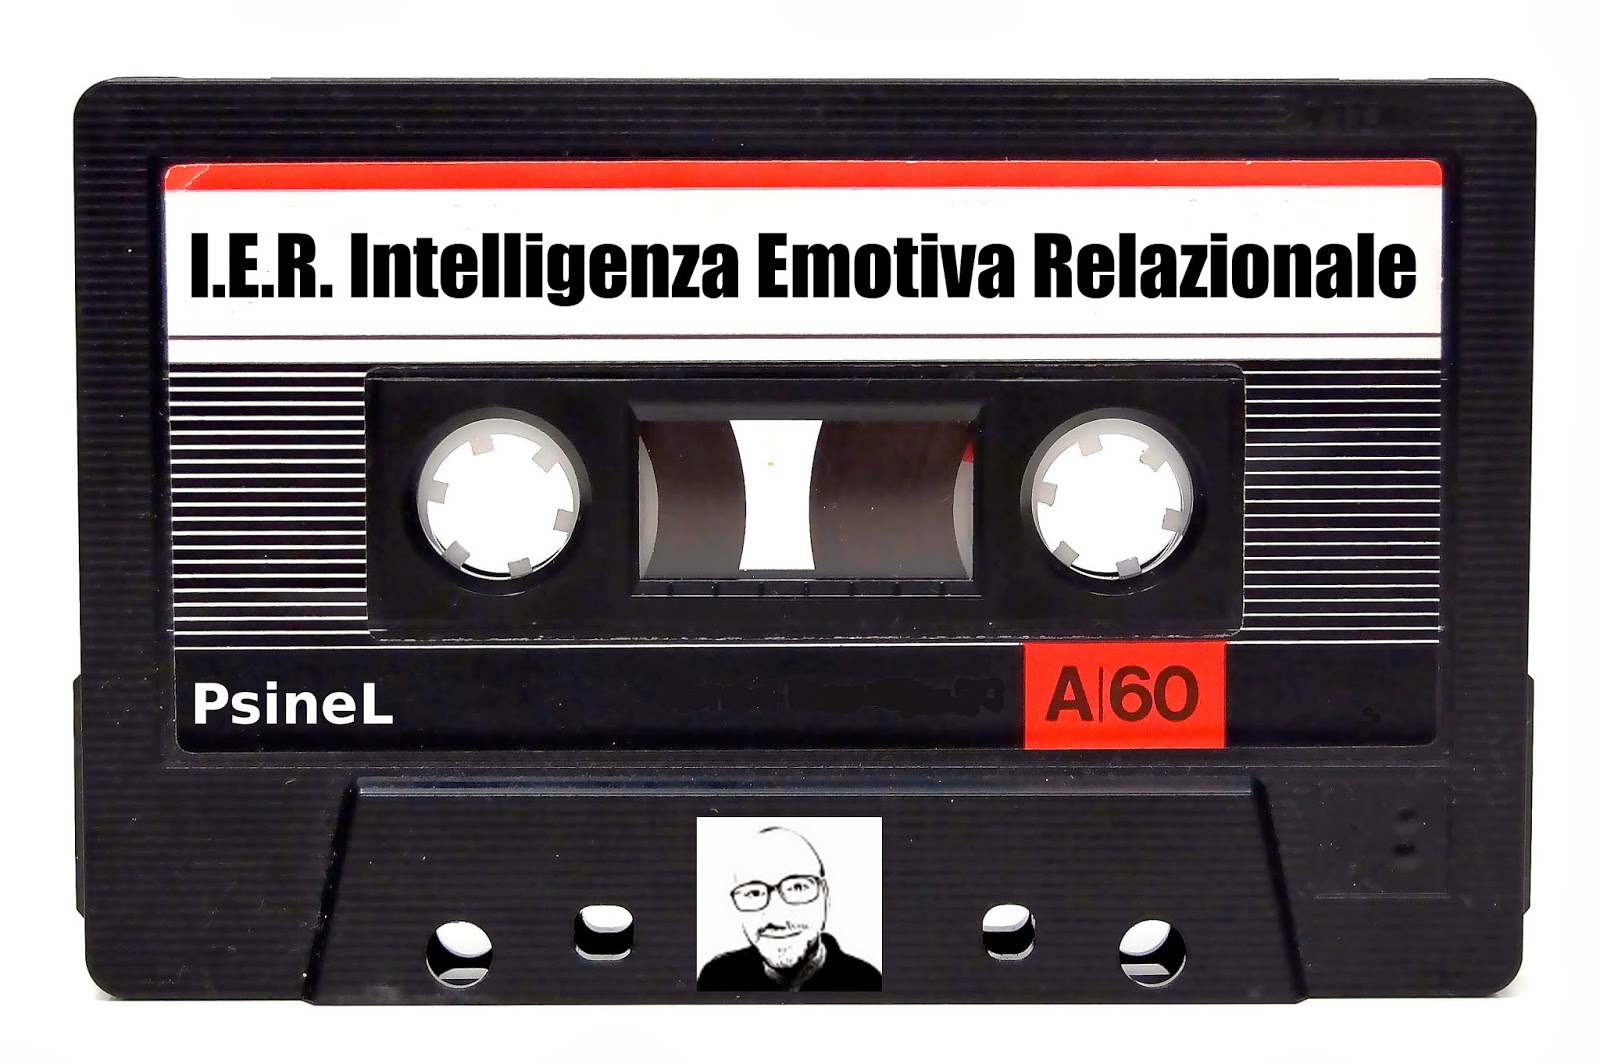 Come coltivare l'intelligenza emotiva relazionale (IER)